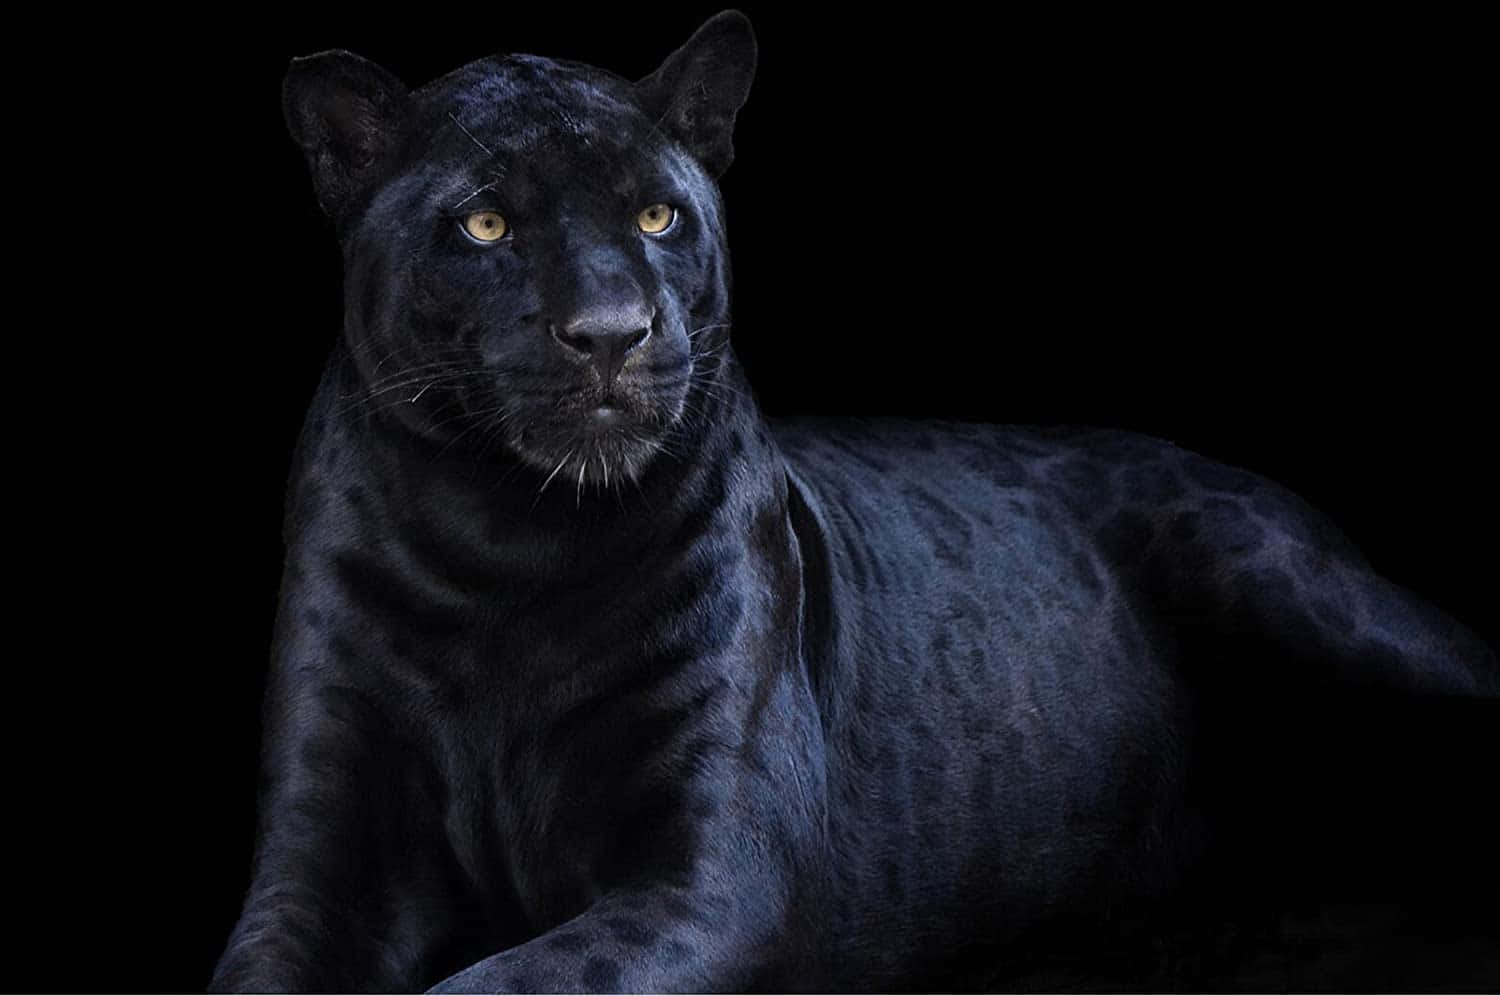 Unleopardo Negro Está Sentado En La Oscuridad.